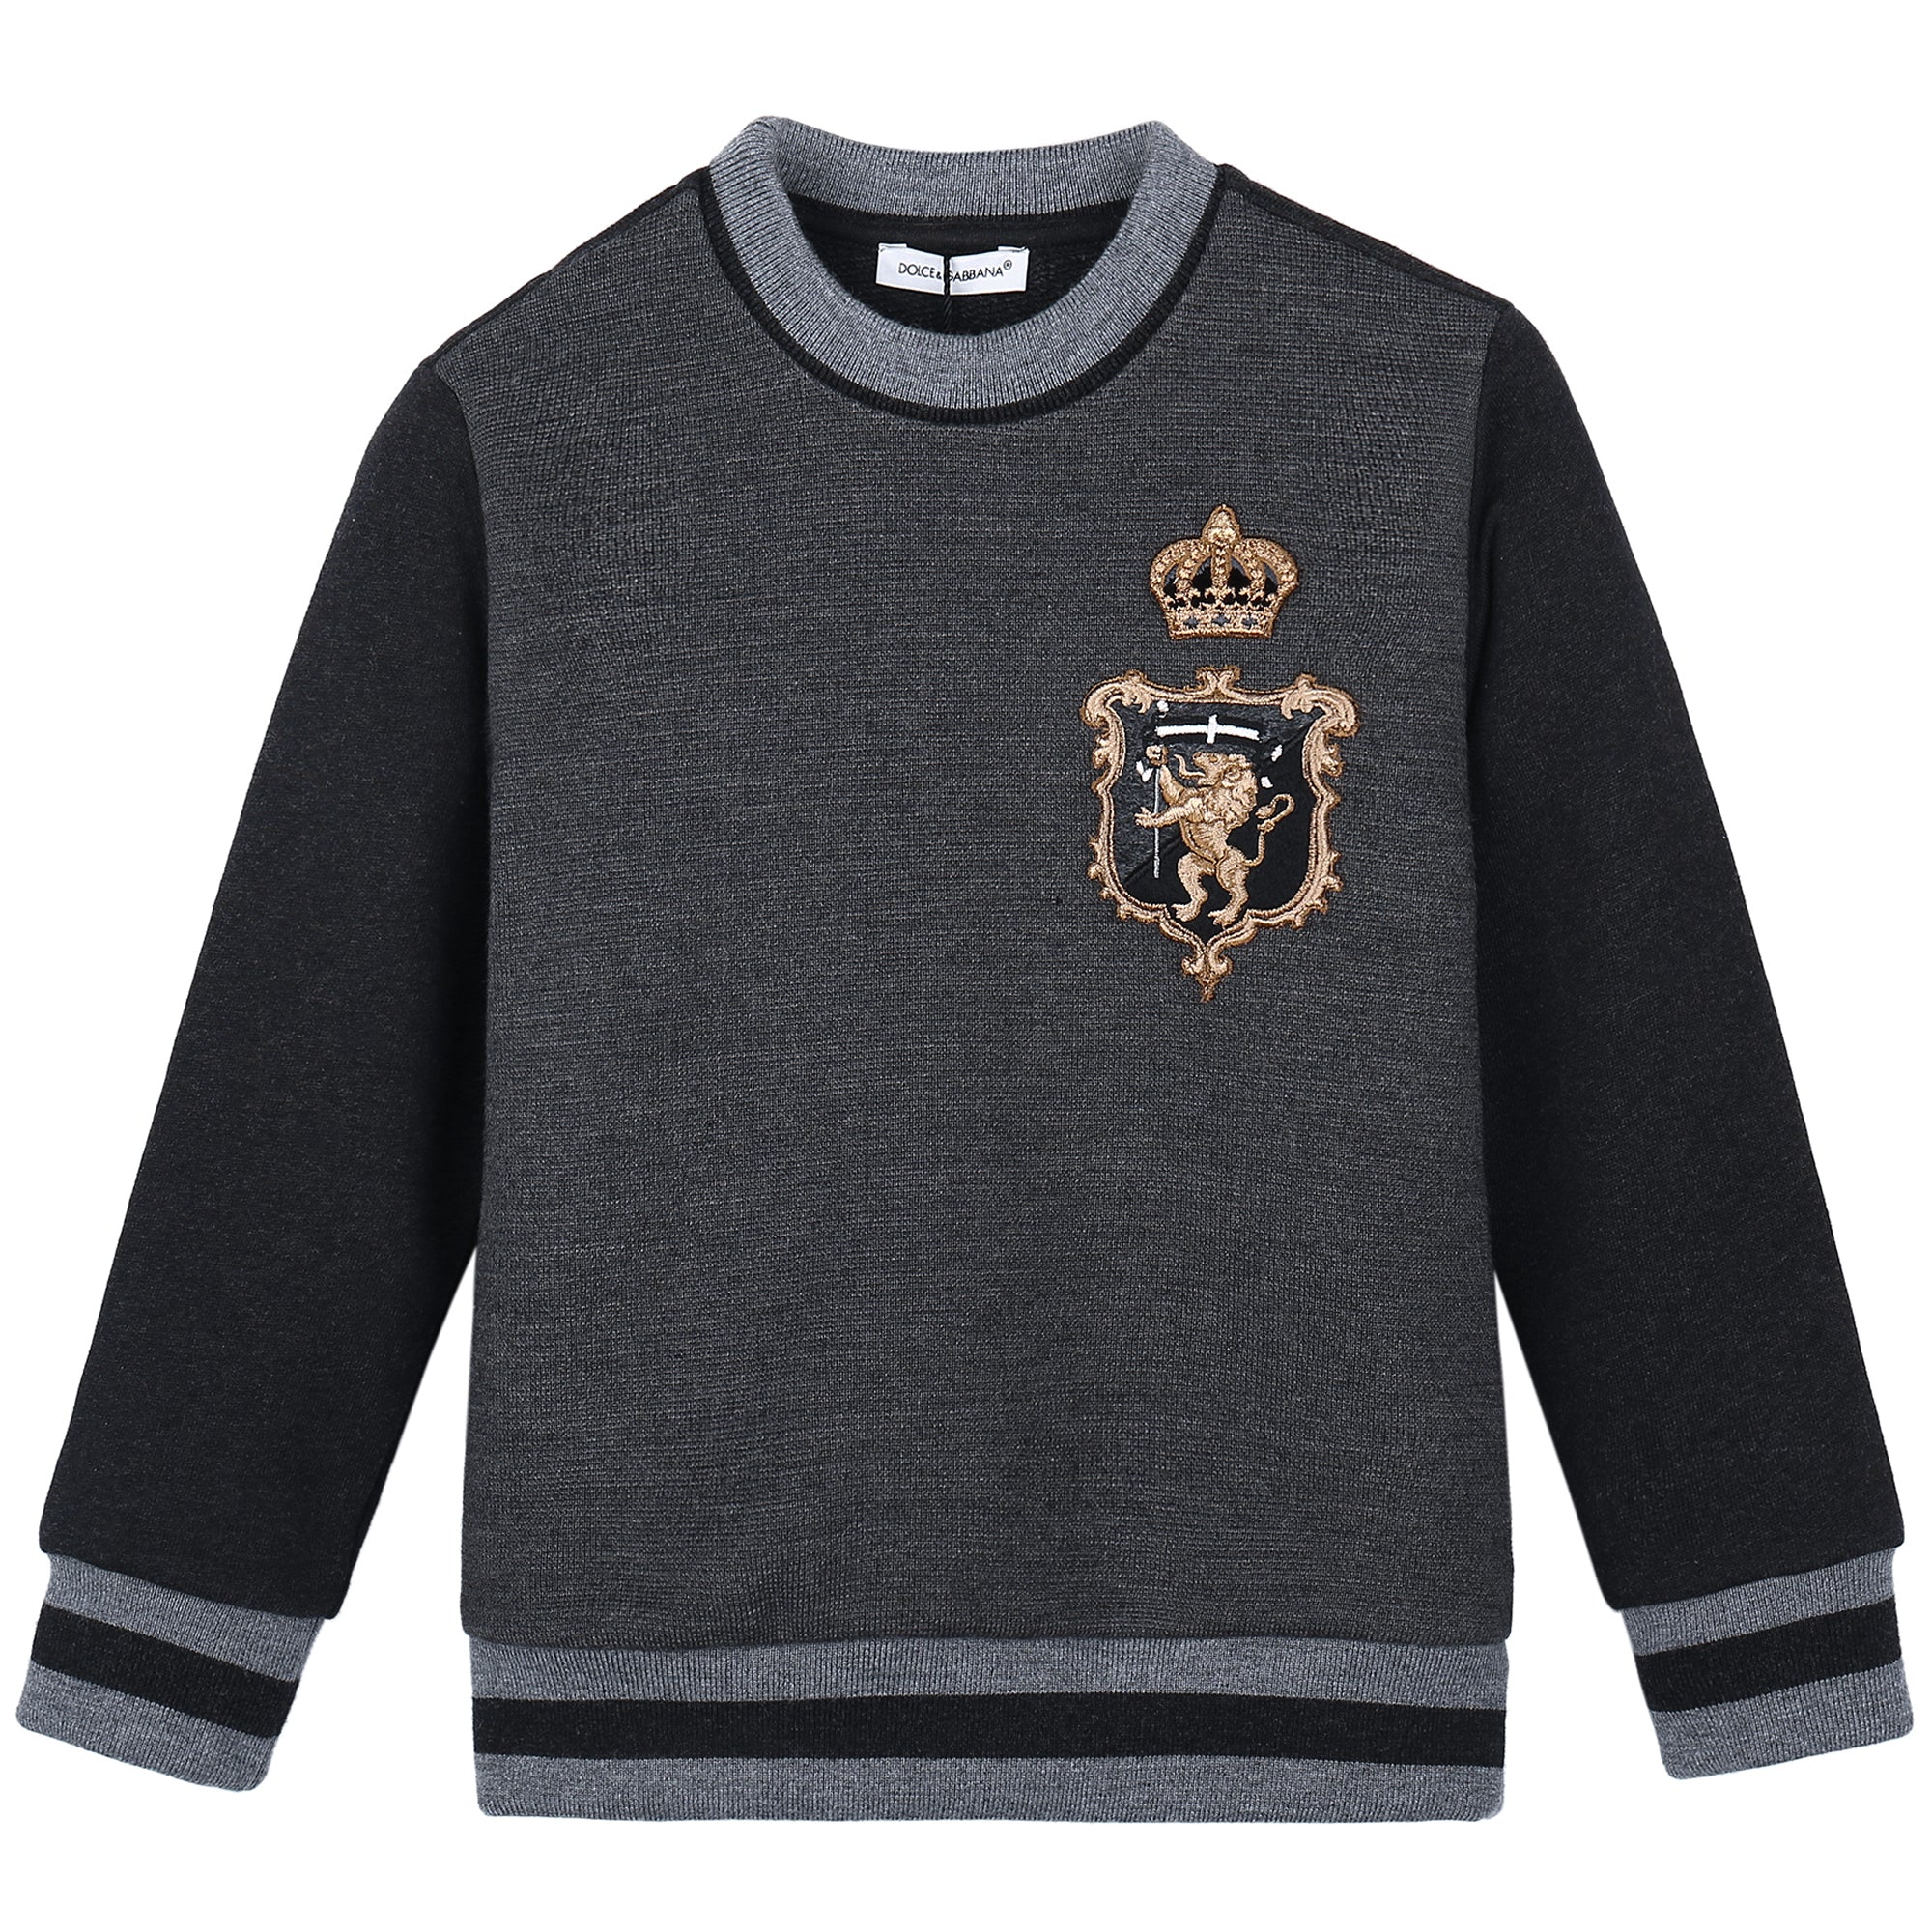 Boys Grey Crown Printed Sweatshirt